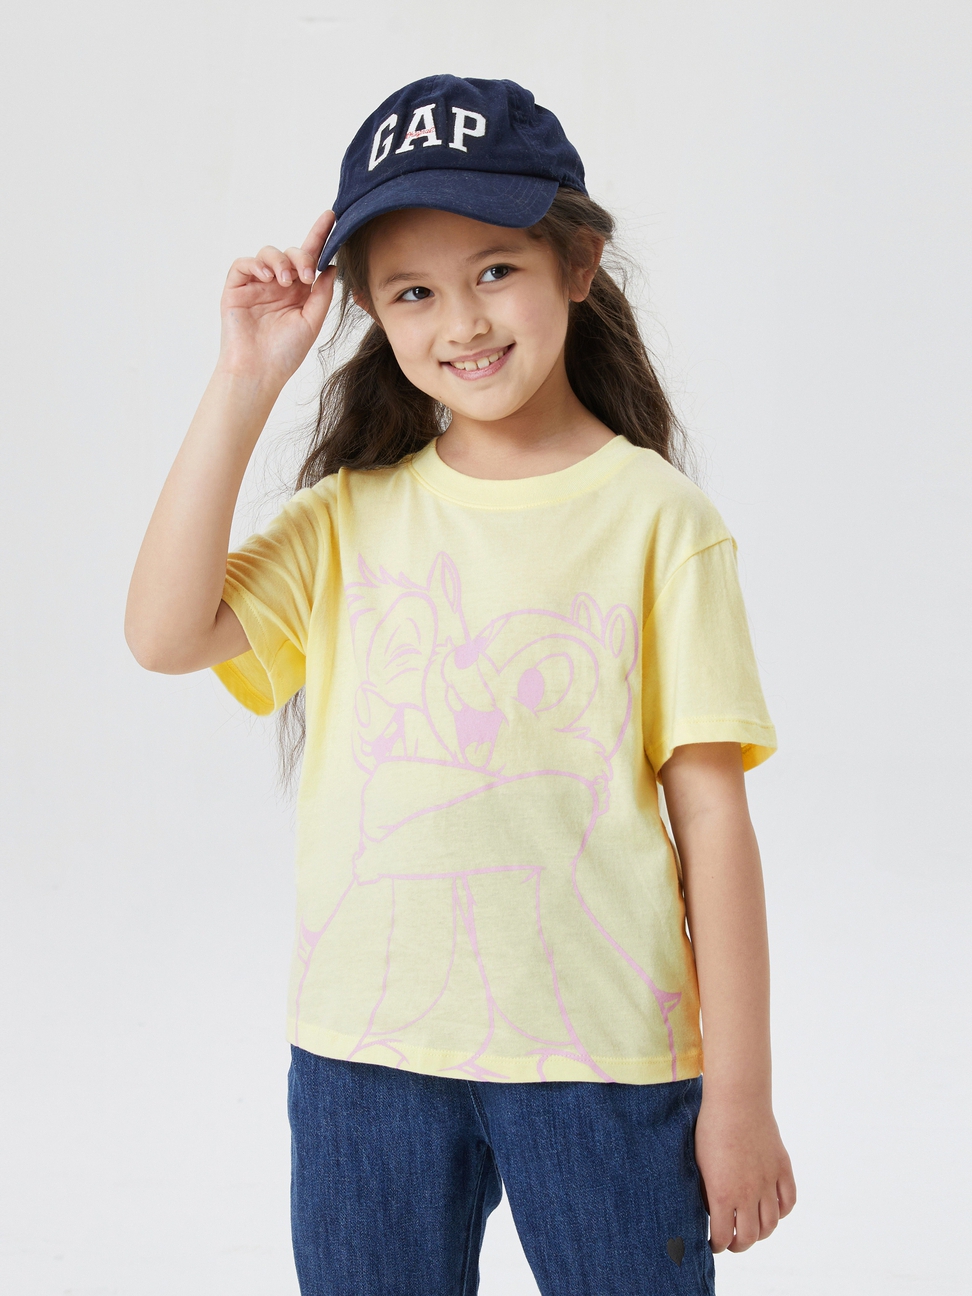 女童|Gap x Disney迪士尼聯名  可愛印花短袖T恤-嫩黃色